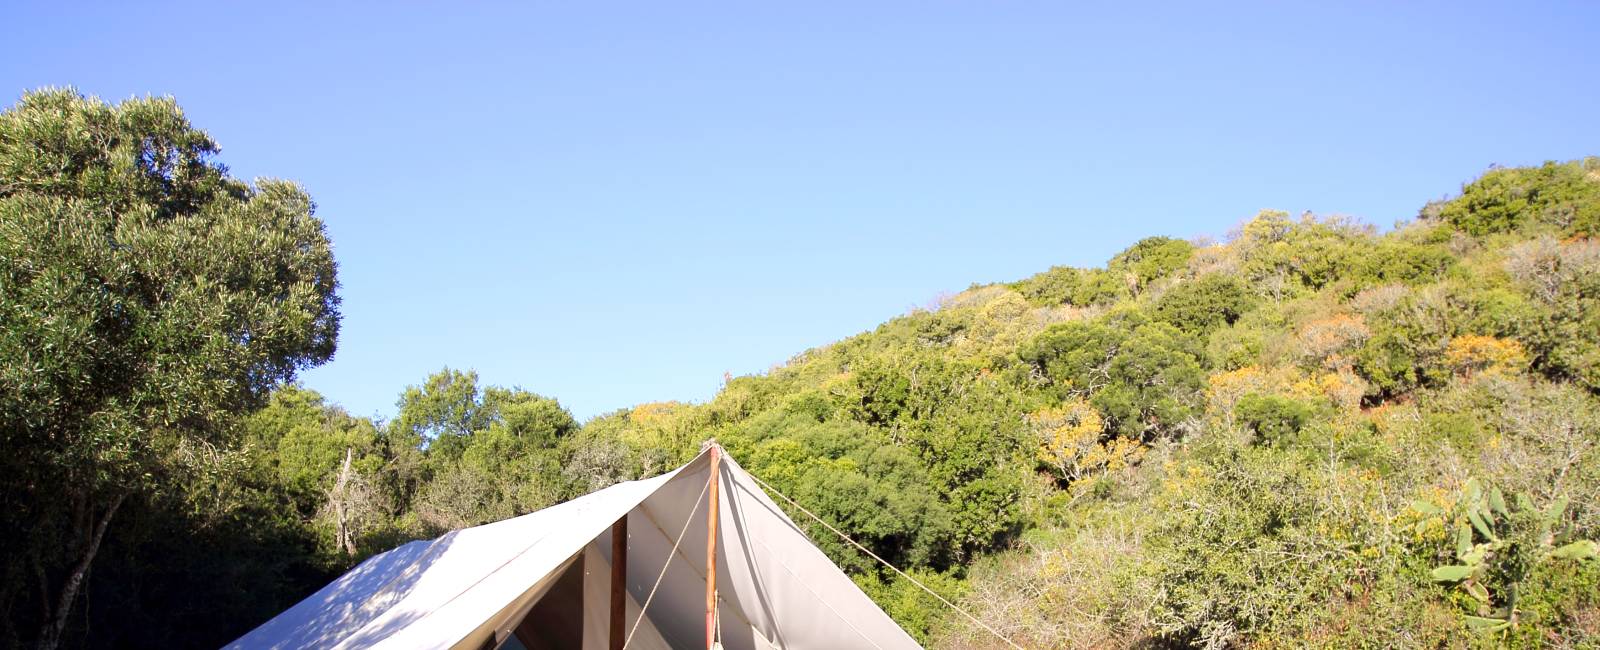 Sydafrika - Amakhala Game Reserve - Quatermains Camp 50